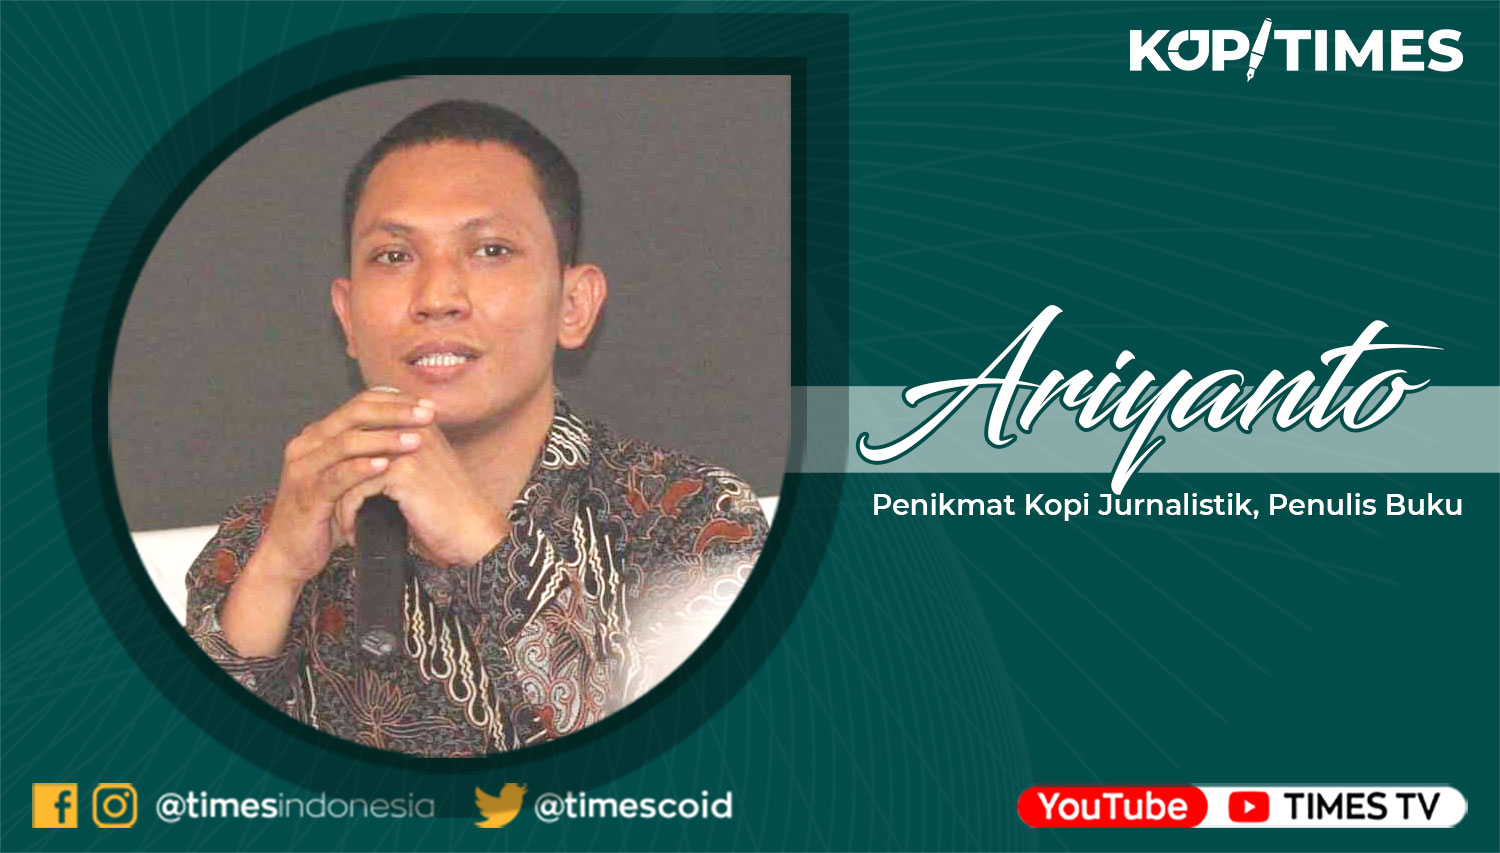 Ariyanto, Penikmat Kopi Jurnalistik dan Penulis Buku.